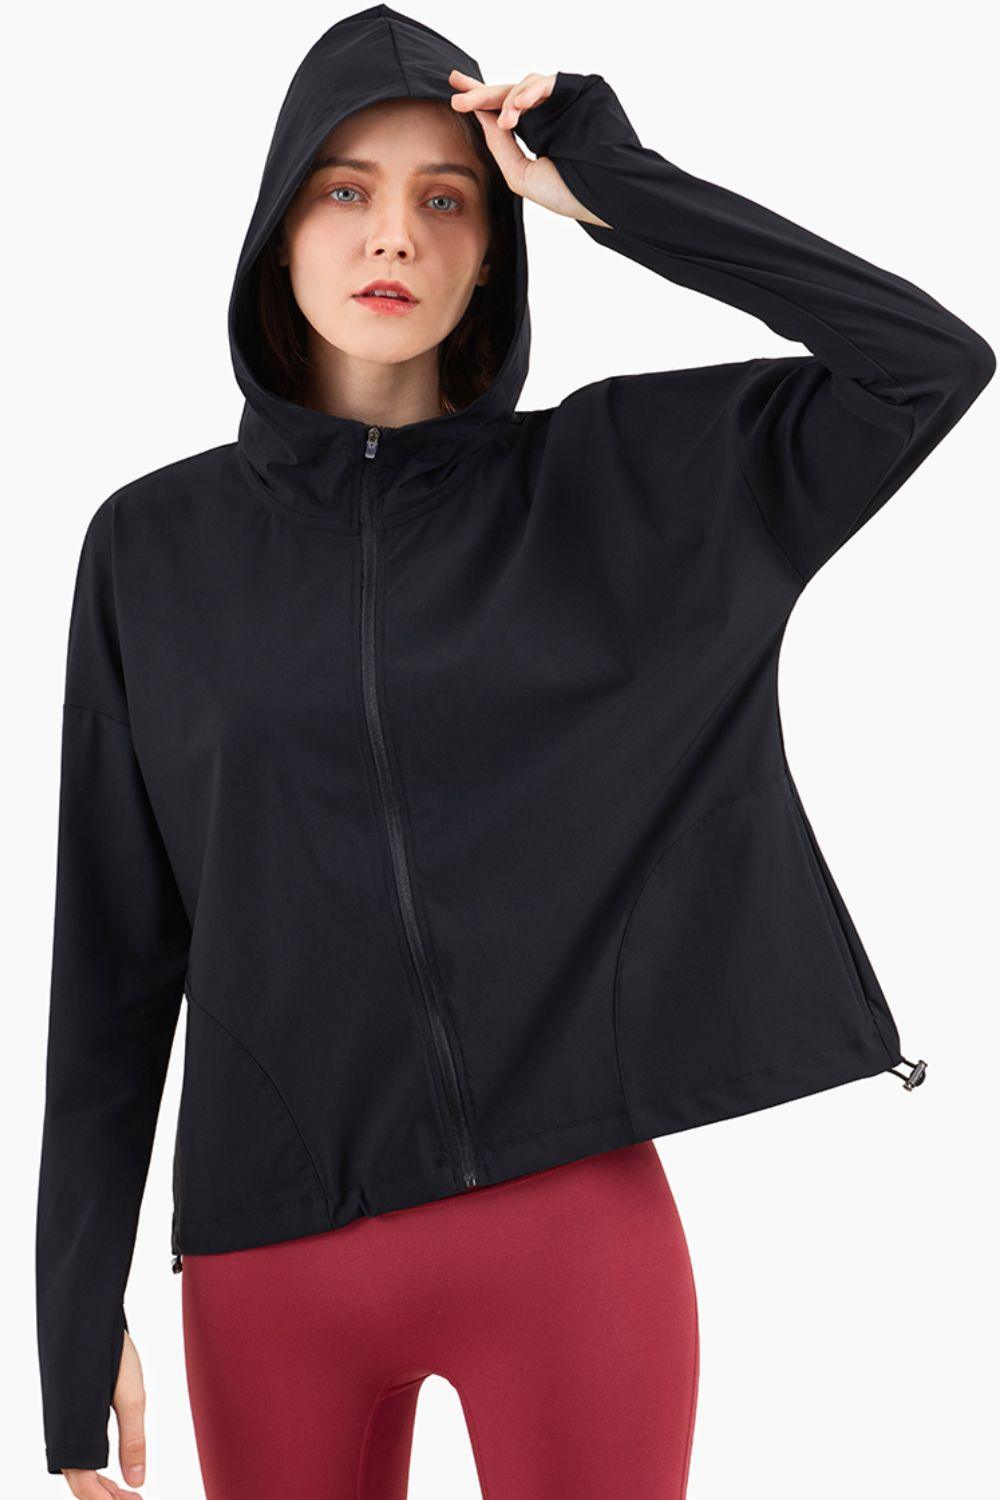 Thumbhole Sleeve Hooded Sports Jacket - Immenzive